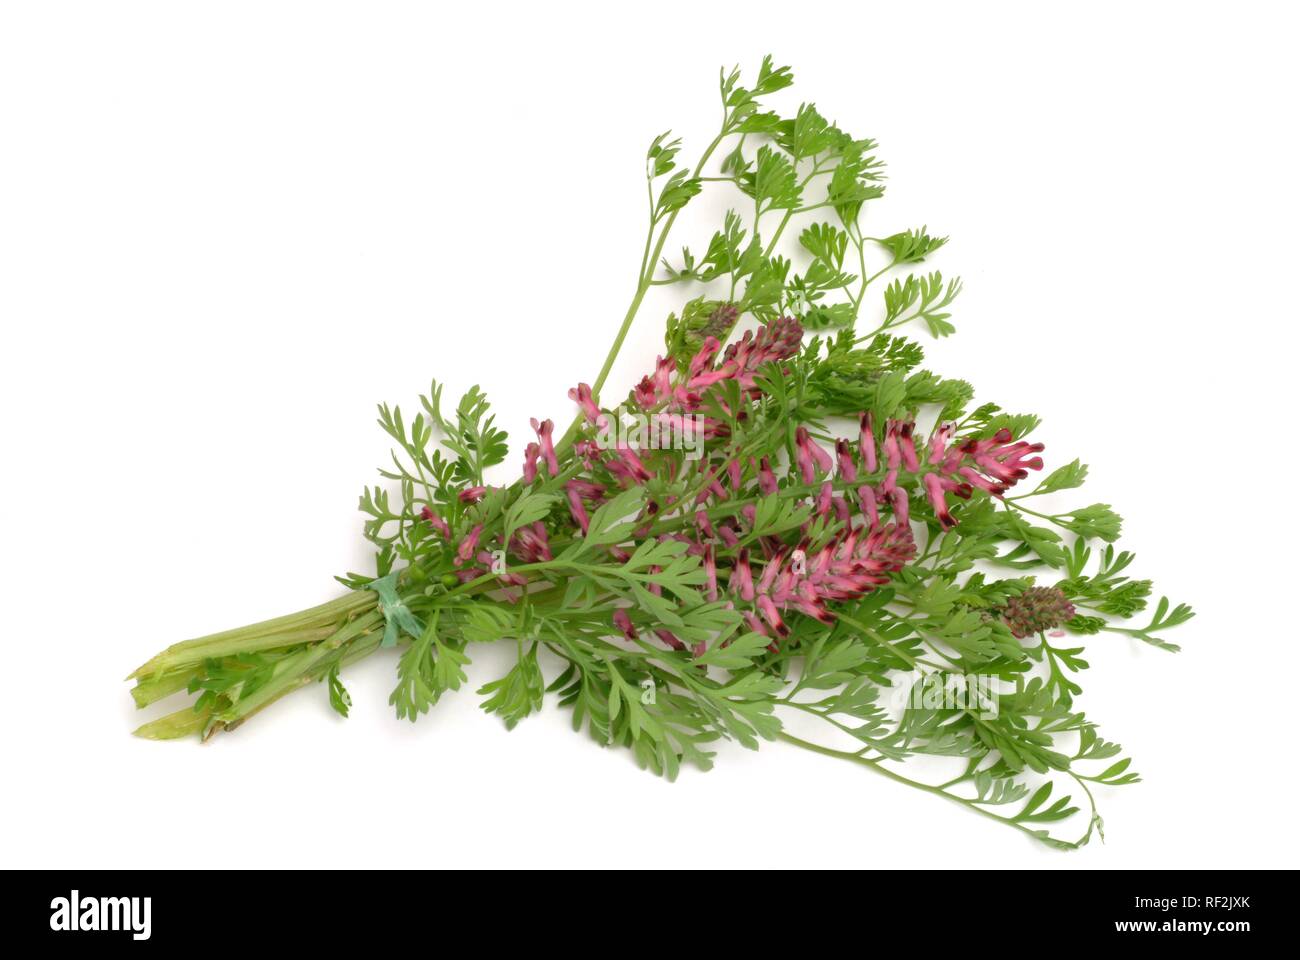 Fumitory or Earth Smoke (Fumaria officinalis), medicinal plant Stock Photo